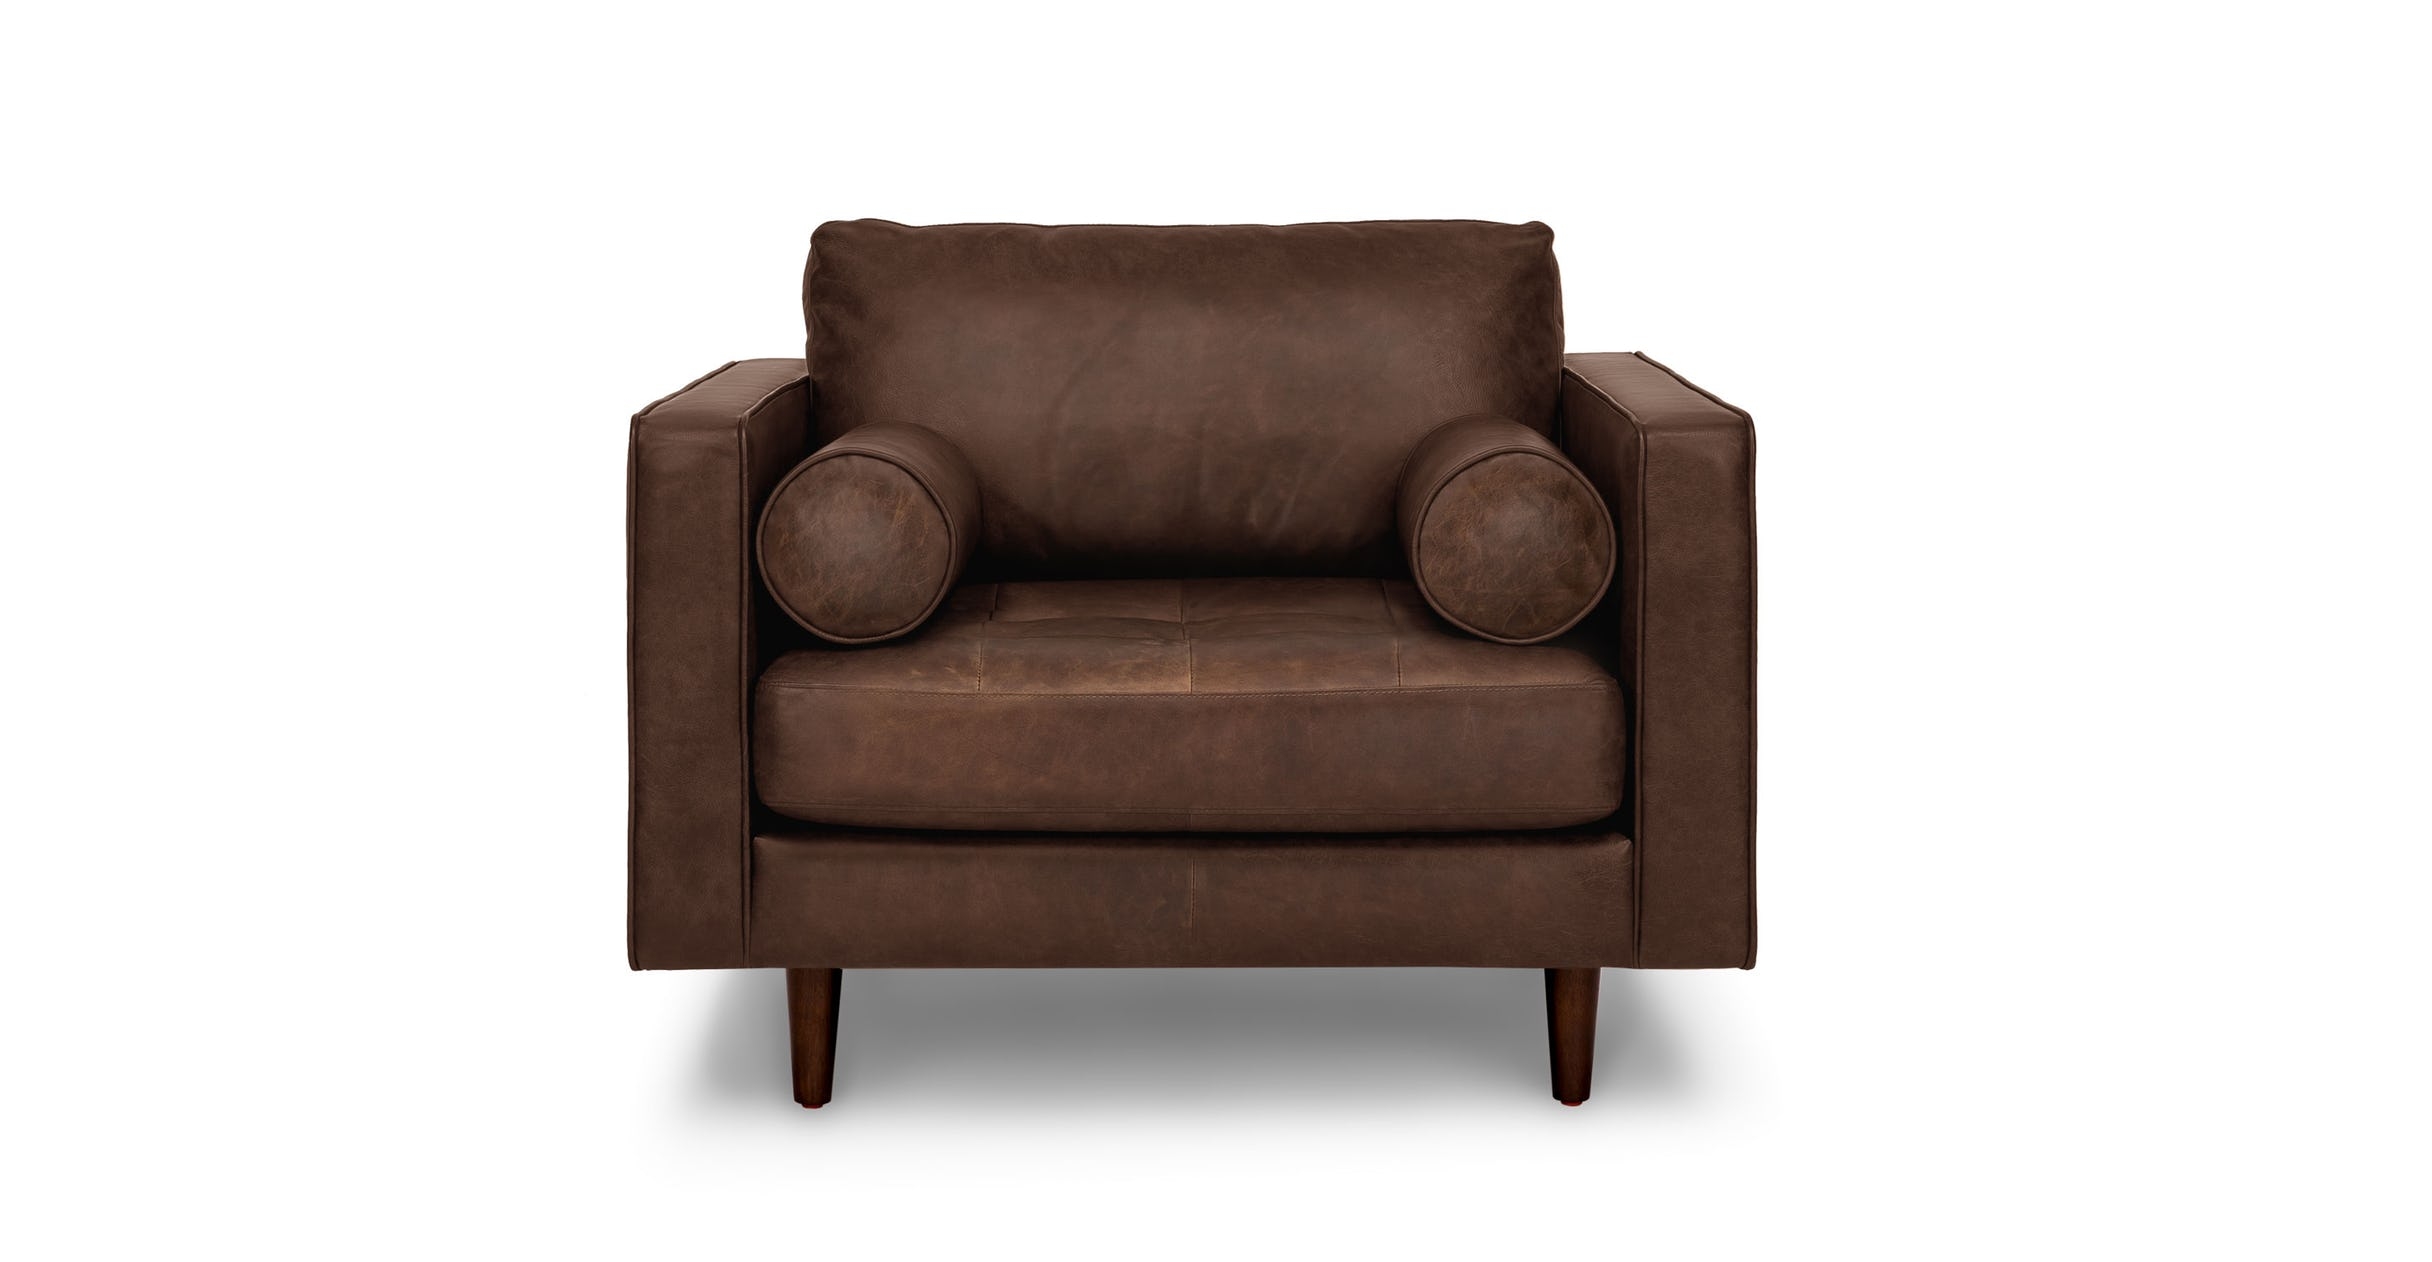 sven charme chocolat chair - Image 0